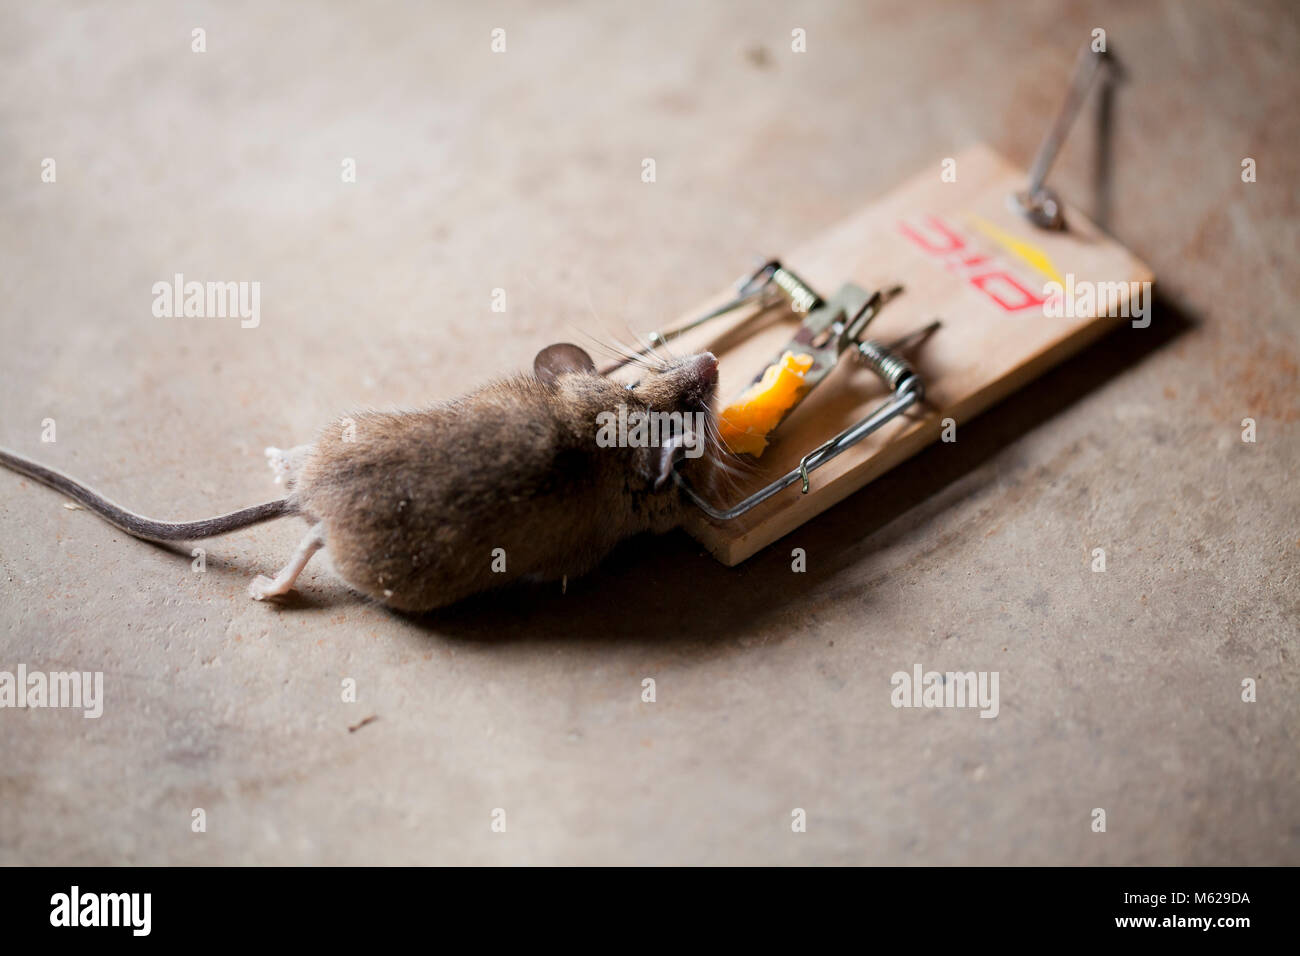 https://c8.alamy.com/comp/M629DA/dead-common-house-mouse-mus-musculus-caught-in-mousetrap-usa-M629DA.jpg